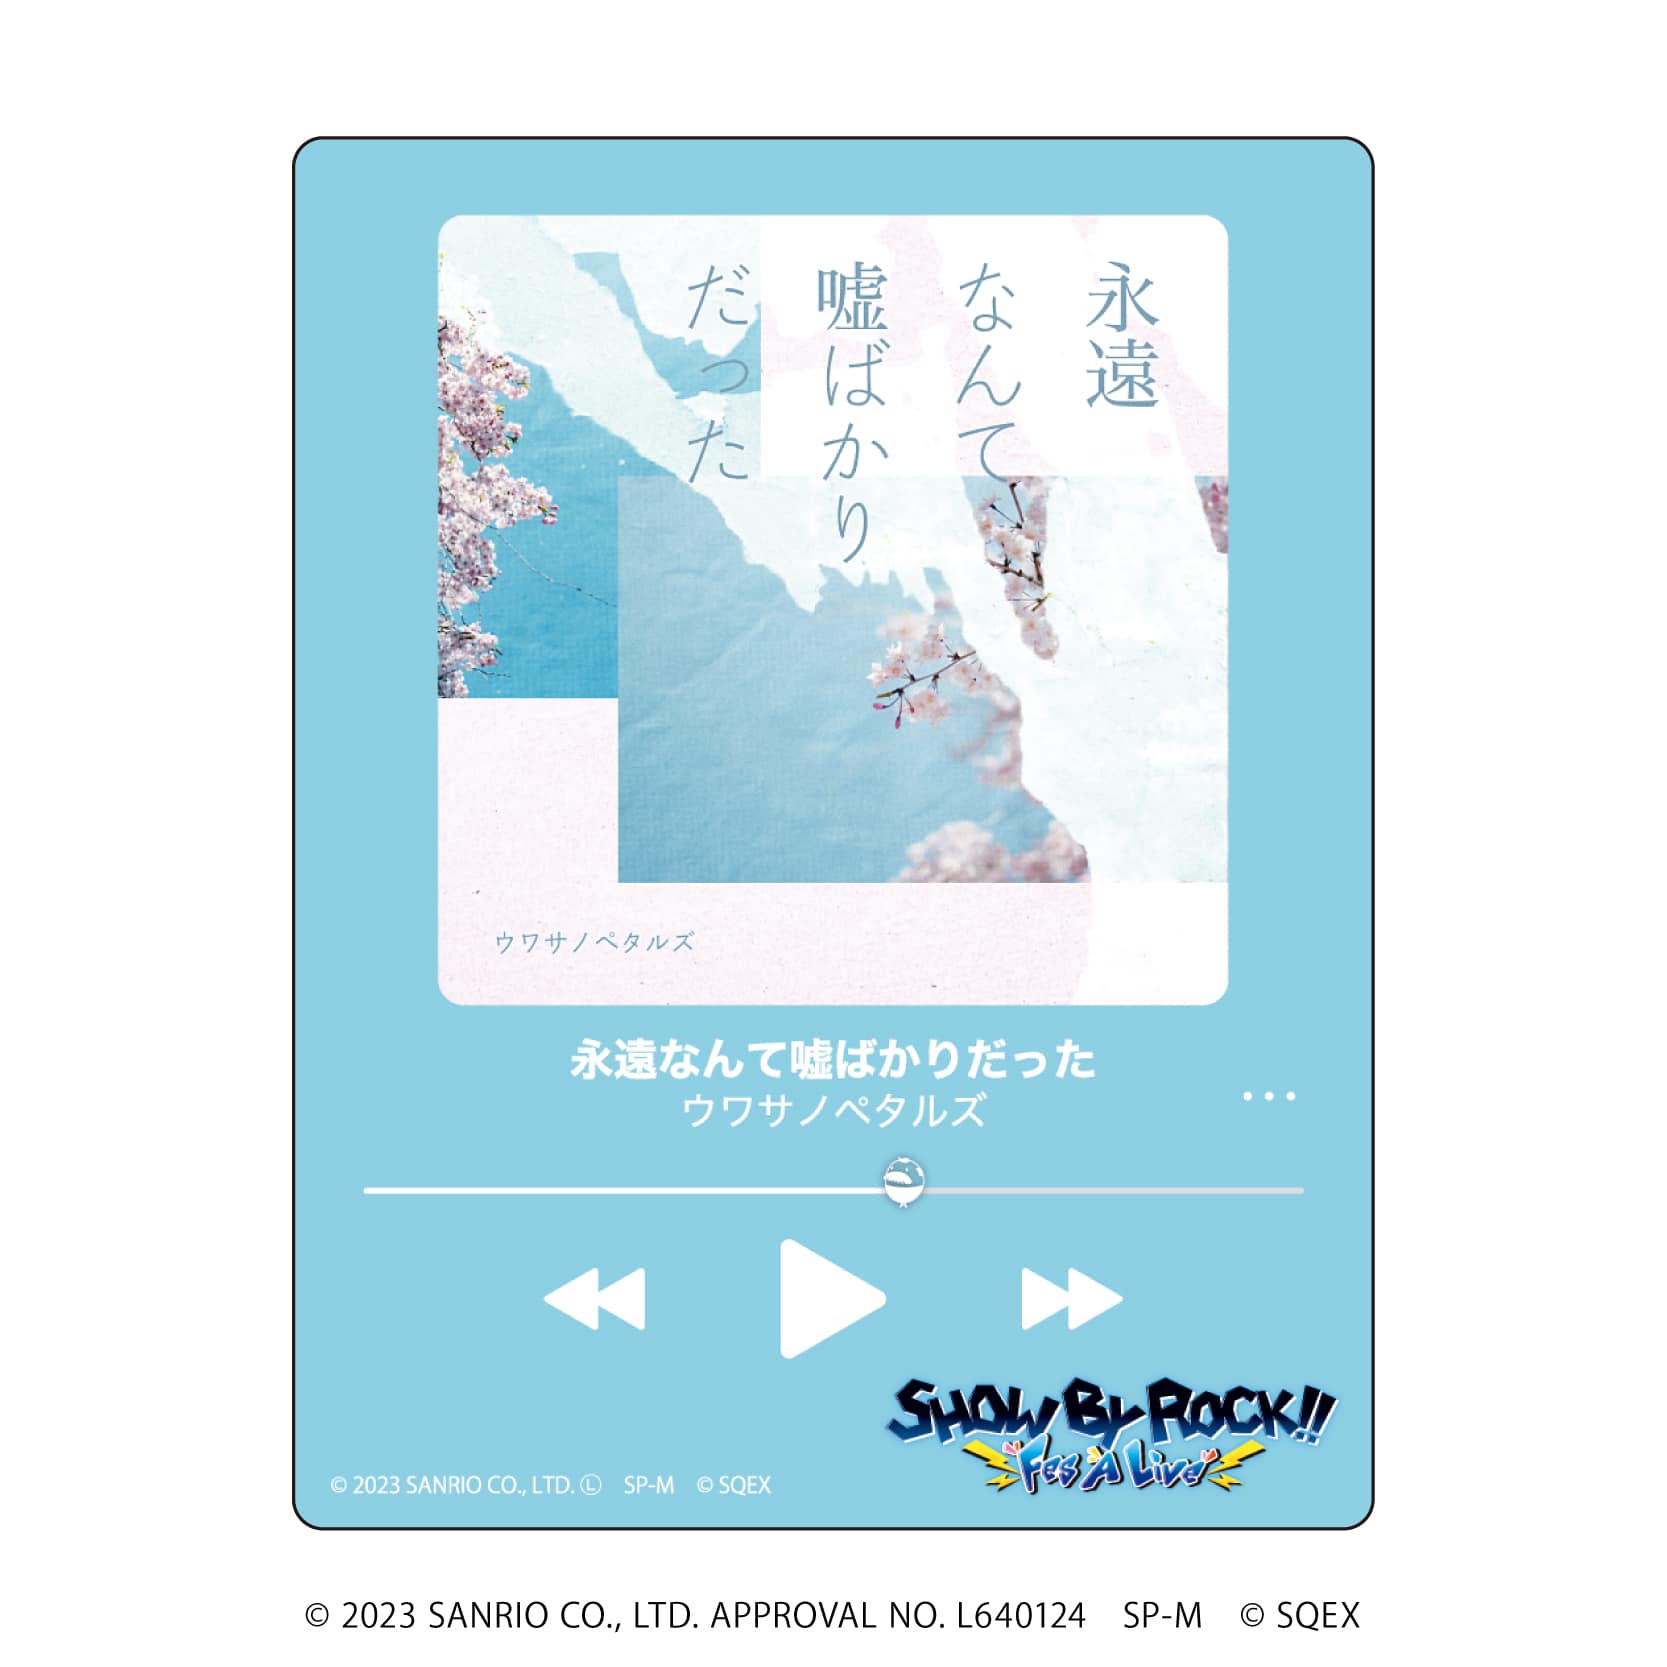 アクリルカード「SHOW BY ROCK!!」32/CDジャケットデザイン ブラインド(6種)